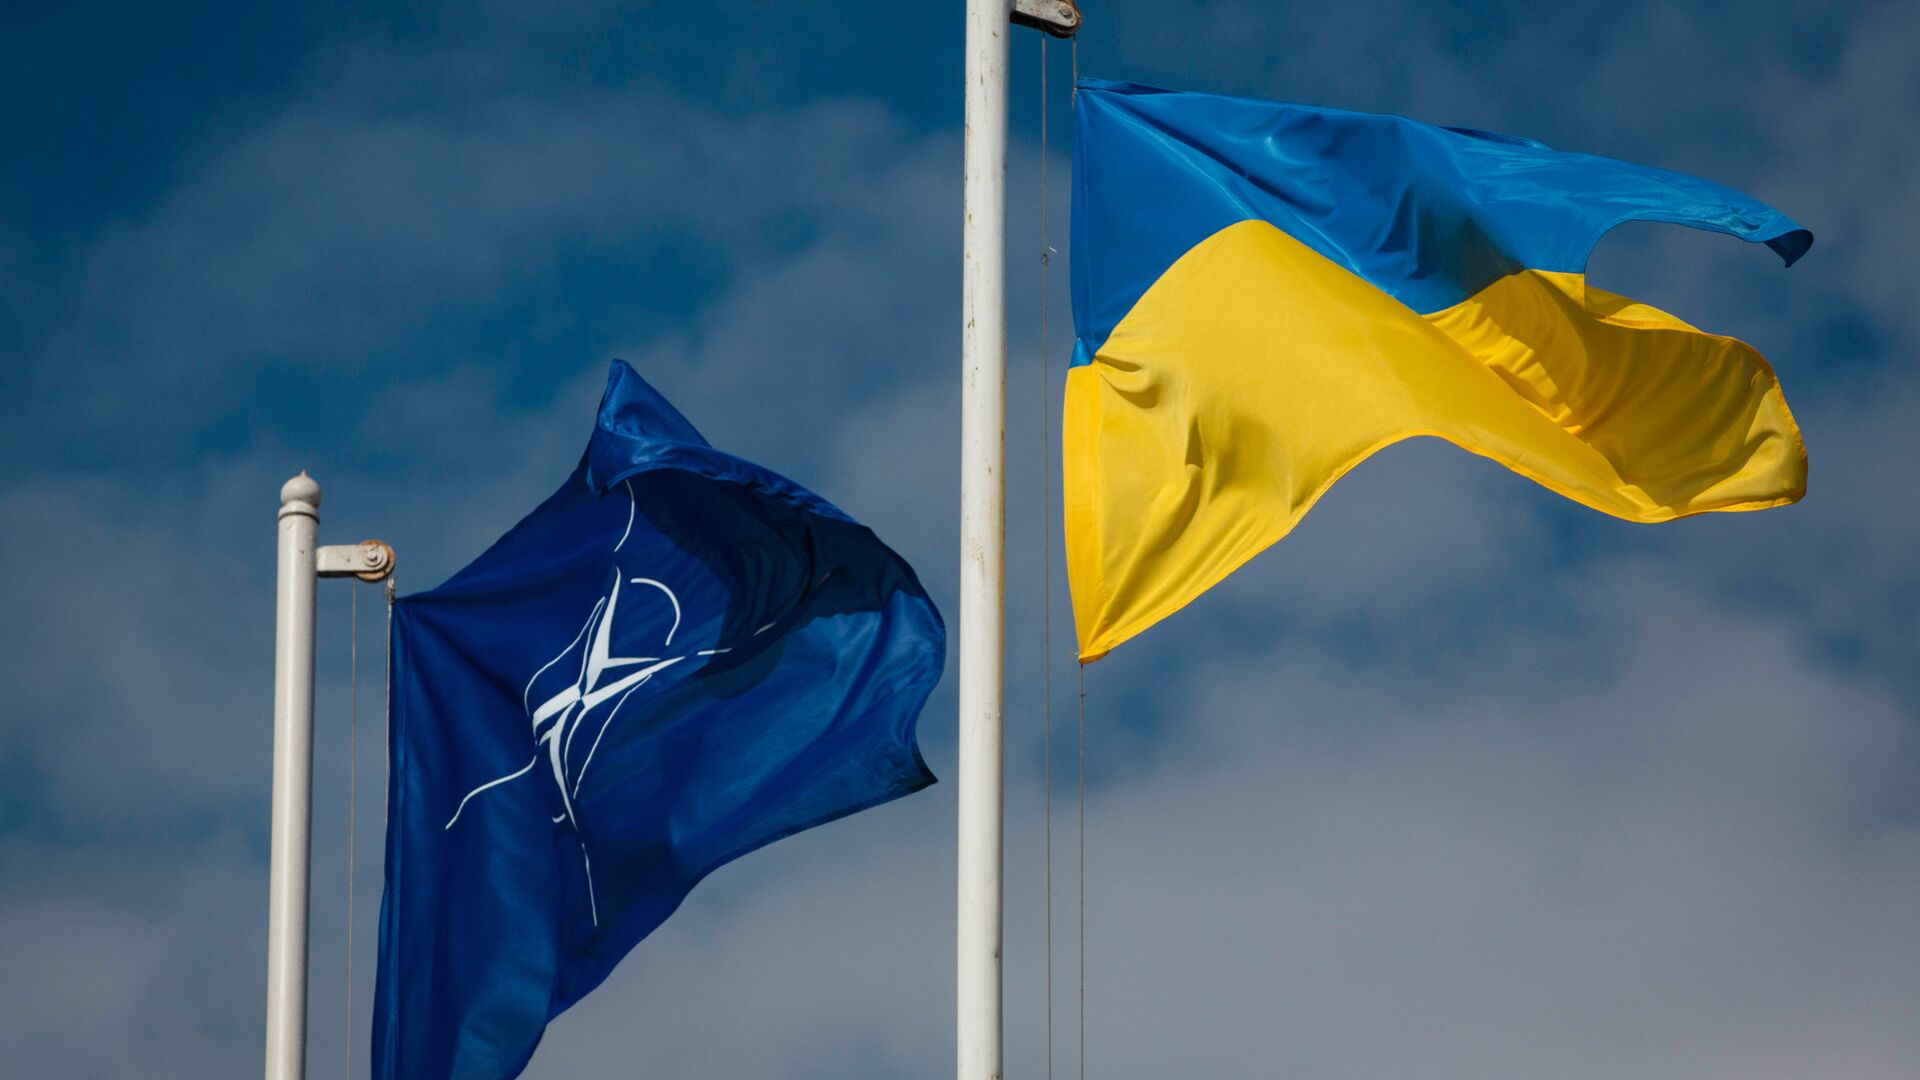 Natsionalnыy flag Ukrainы i flag Organizatsii Severoatlanticheskogo dogovora (NATO) - Sputnik Oʻzbekiston, 1920, 08.04.2021